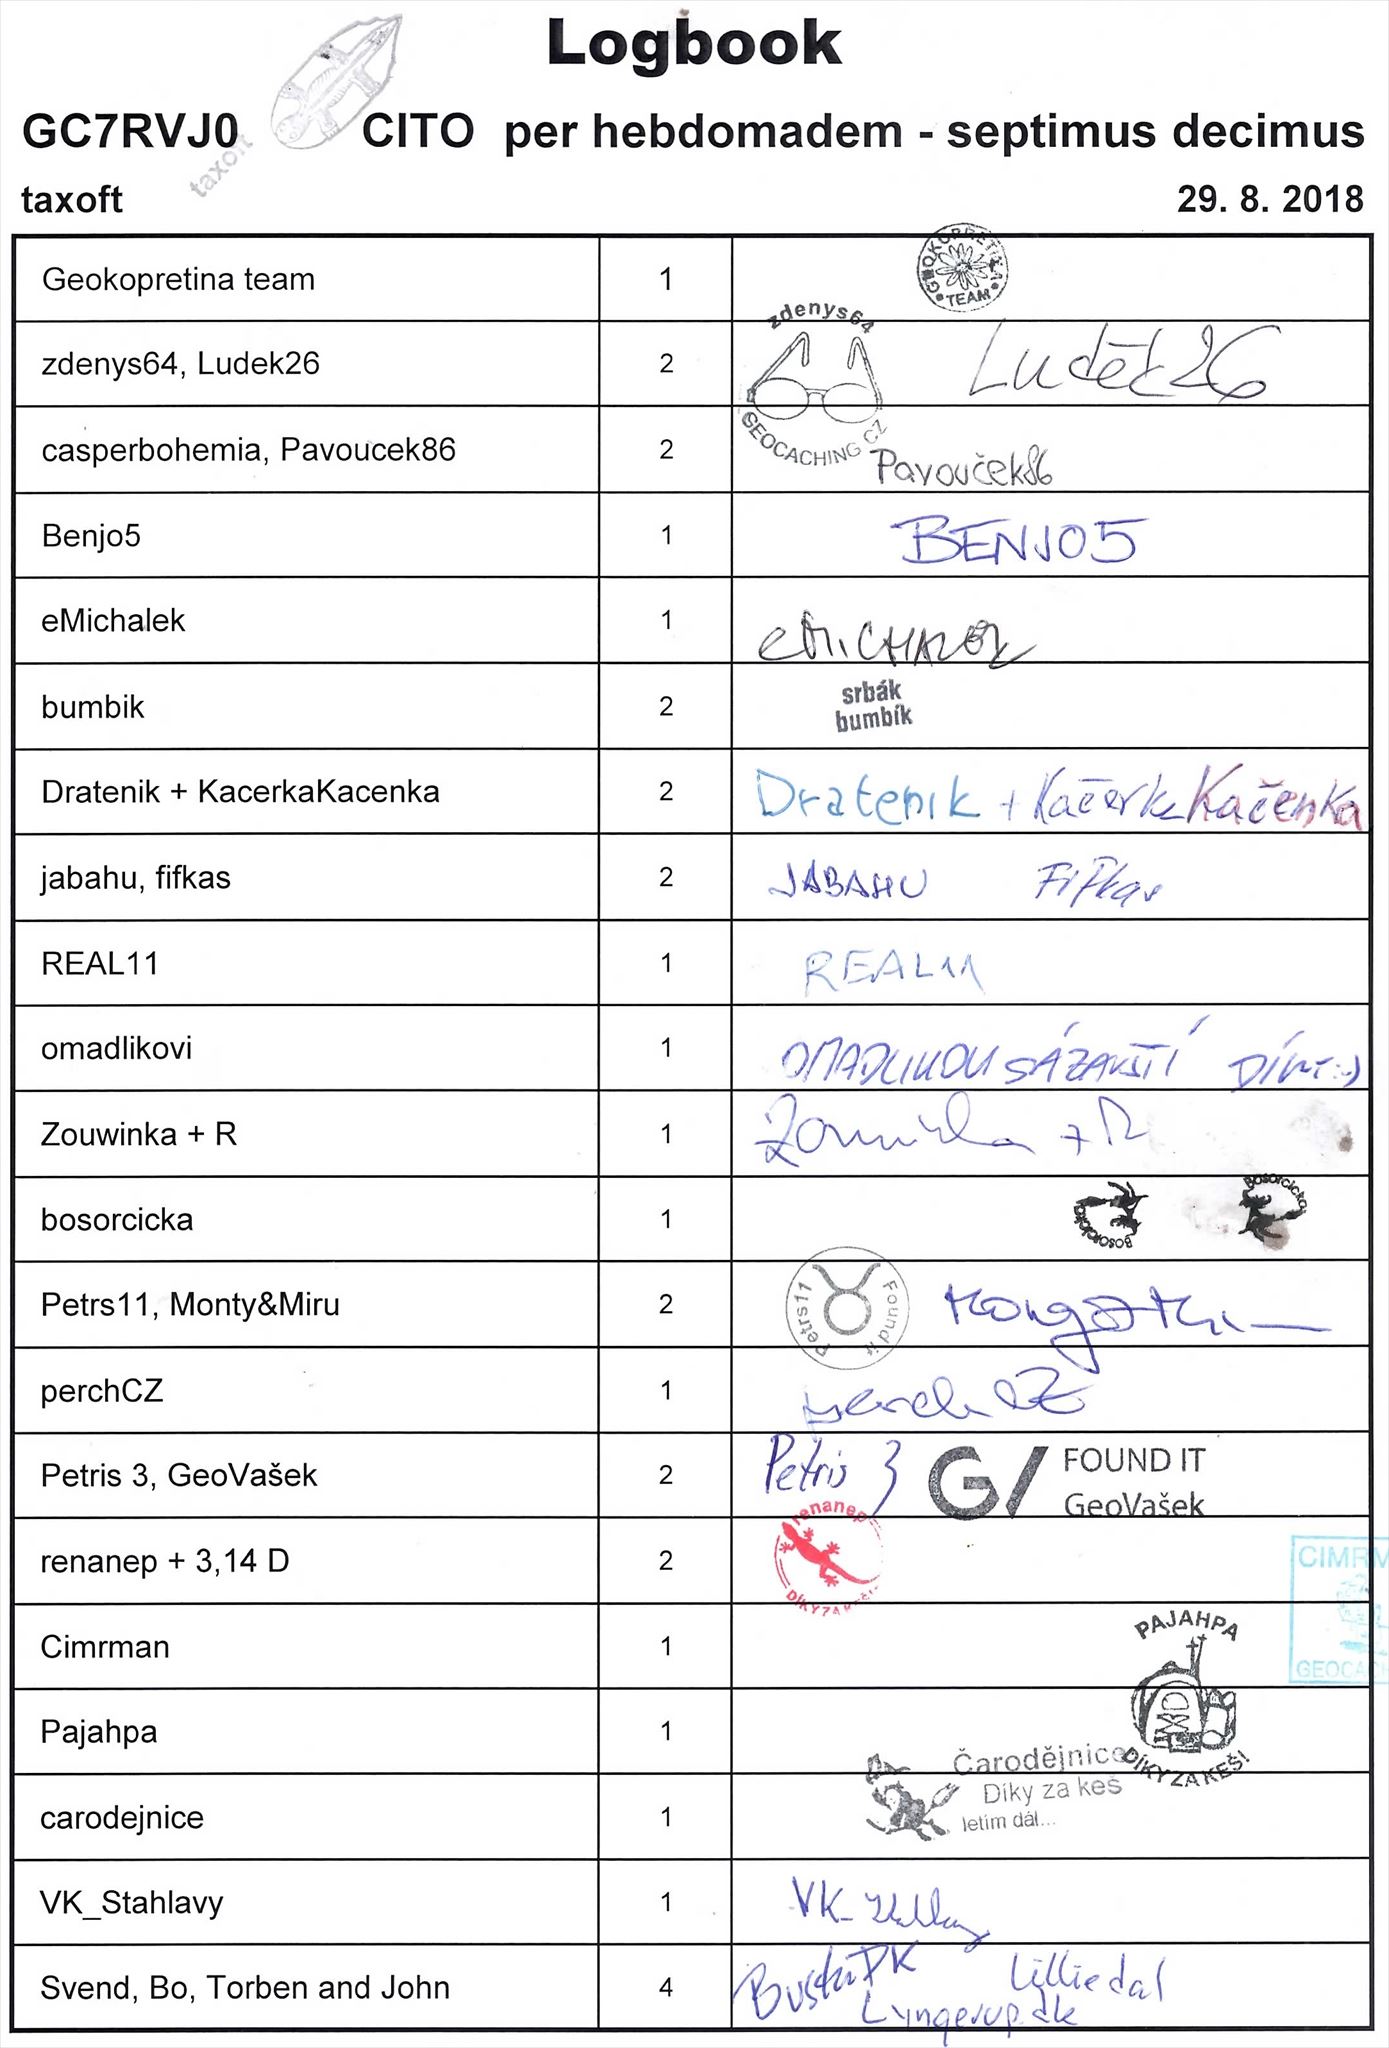 GC7RVJ0 - CITO per hebdomadem - septimus decimus - logbook